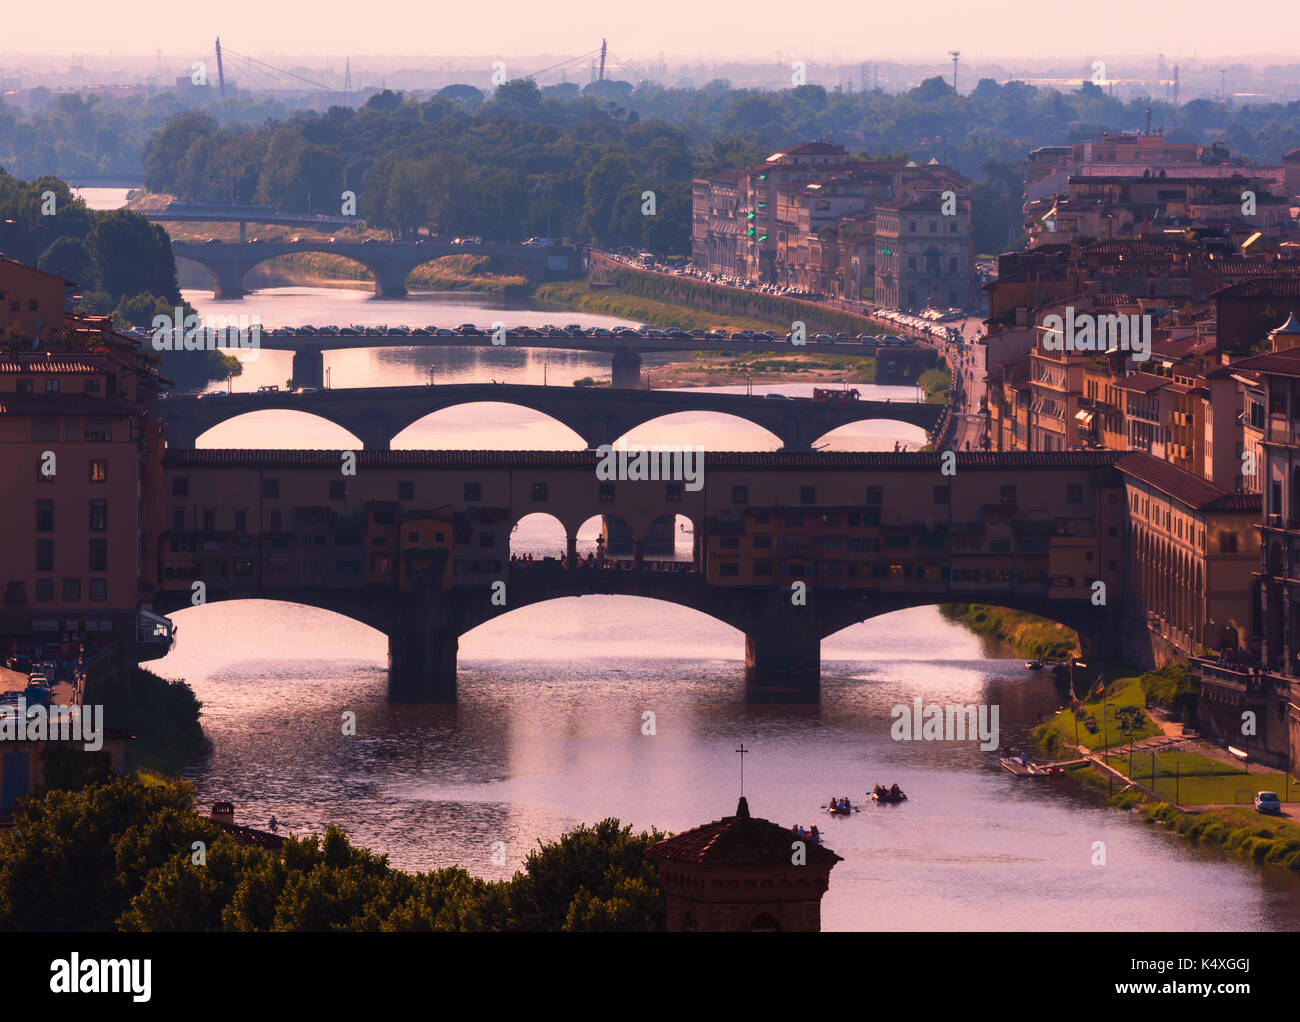 Firenze, provincia di Firenze, Toscana, Italia. vista di ponti sul fiume Arno, ponte vecchio in primo piano. Il centro storico di Firenze è un u Foto Stock